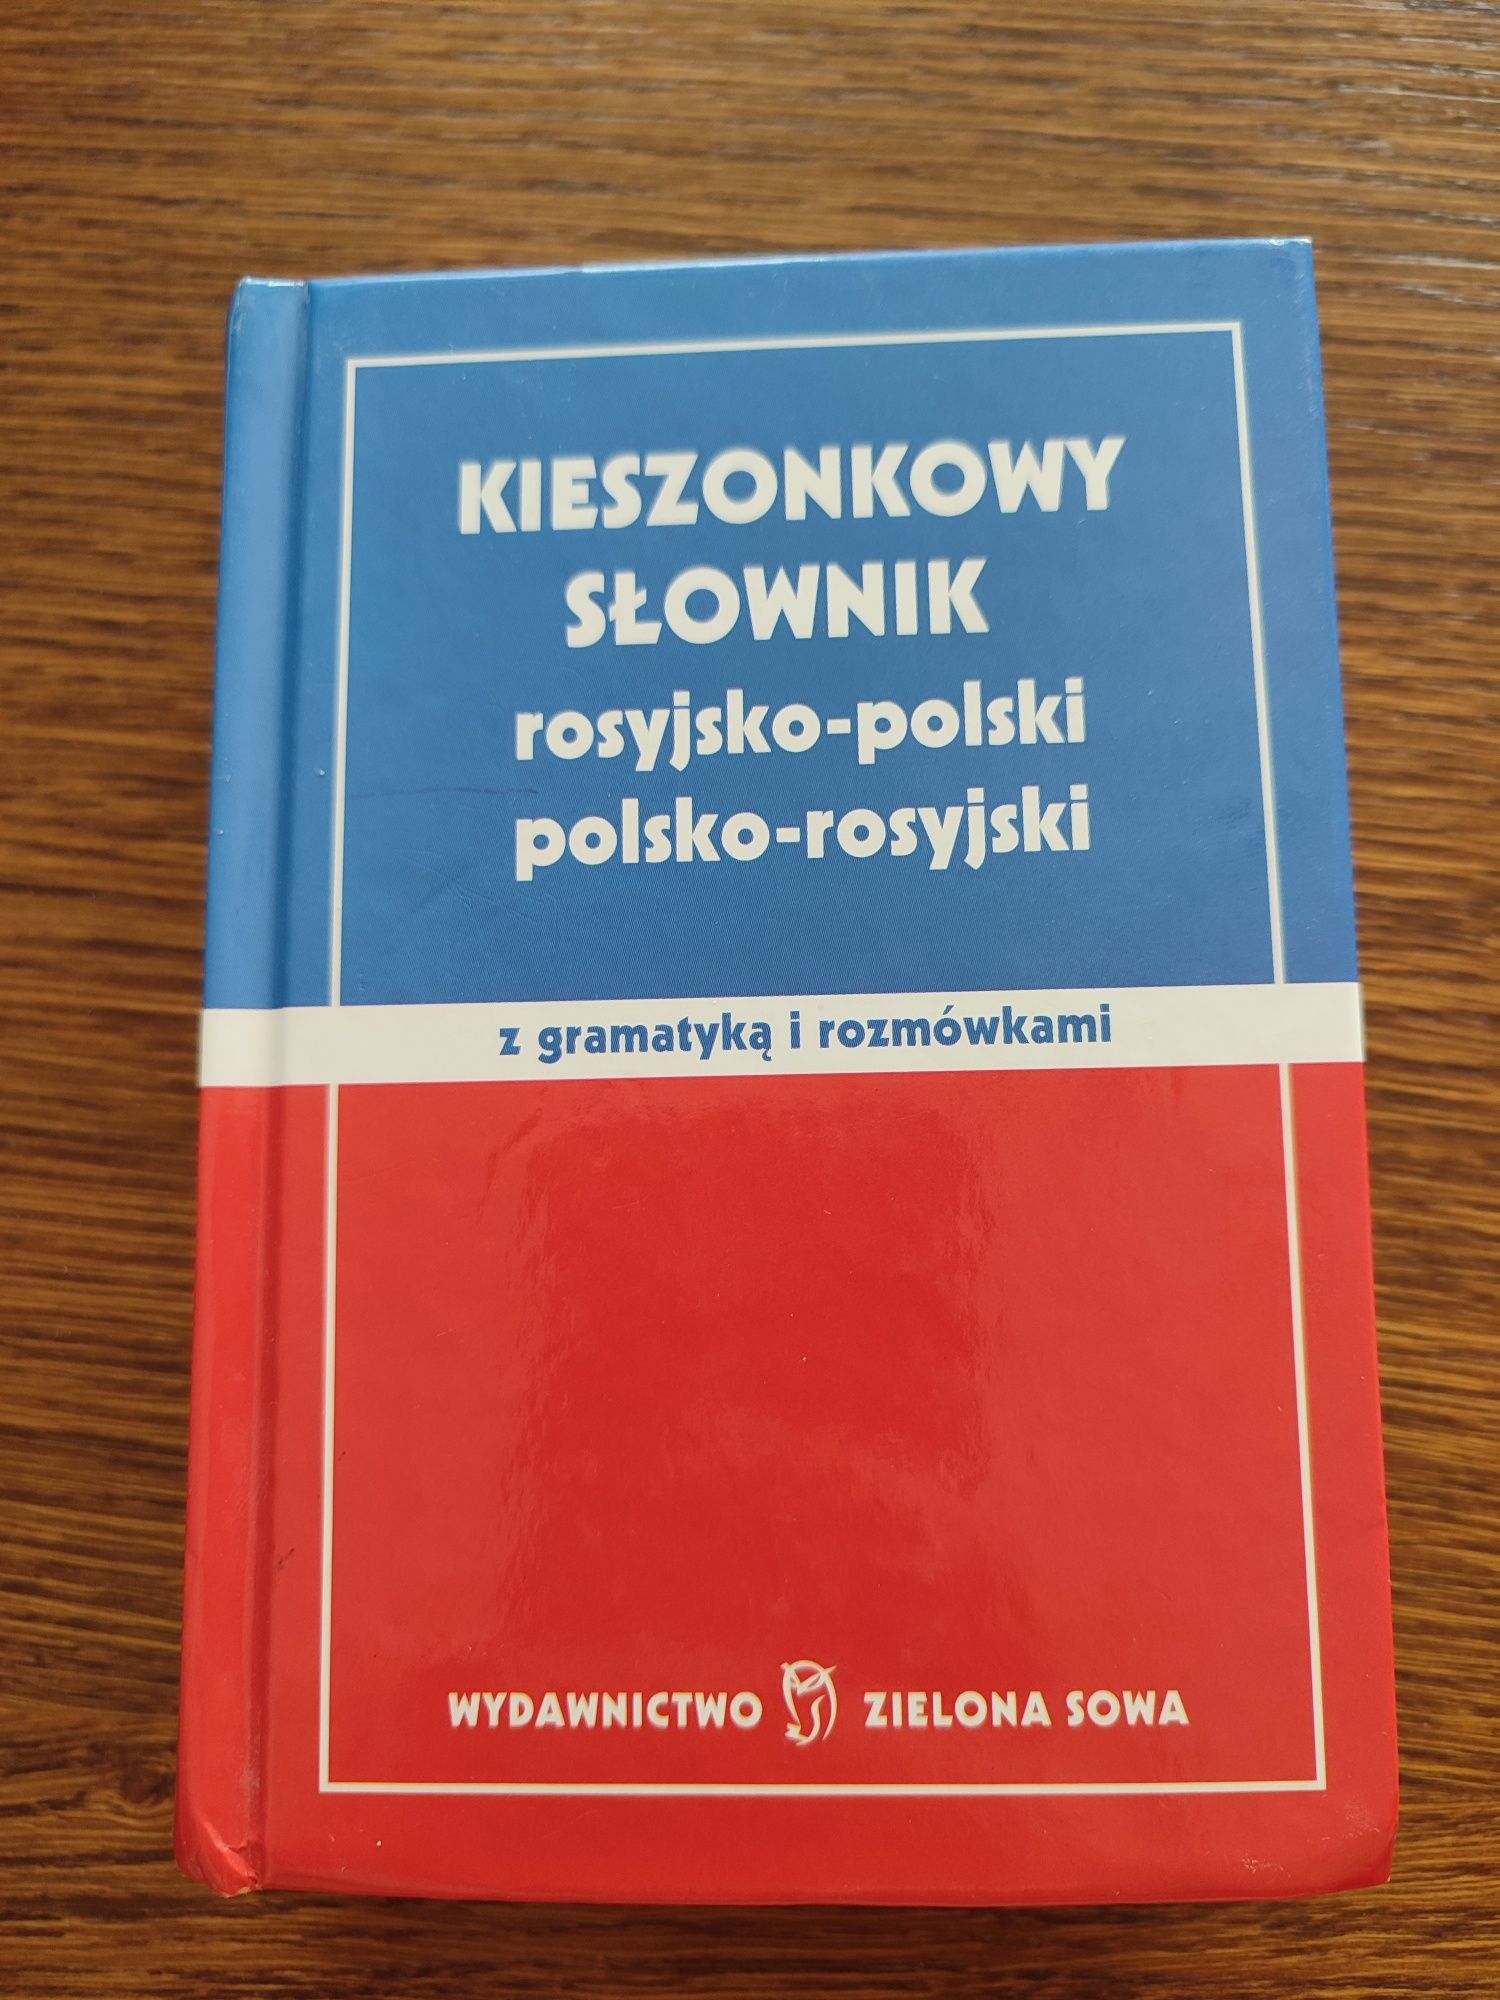 Kieszonkowy słownik rosyjsko-polski wyd. Zielona sowa